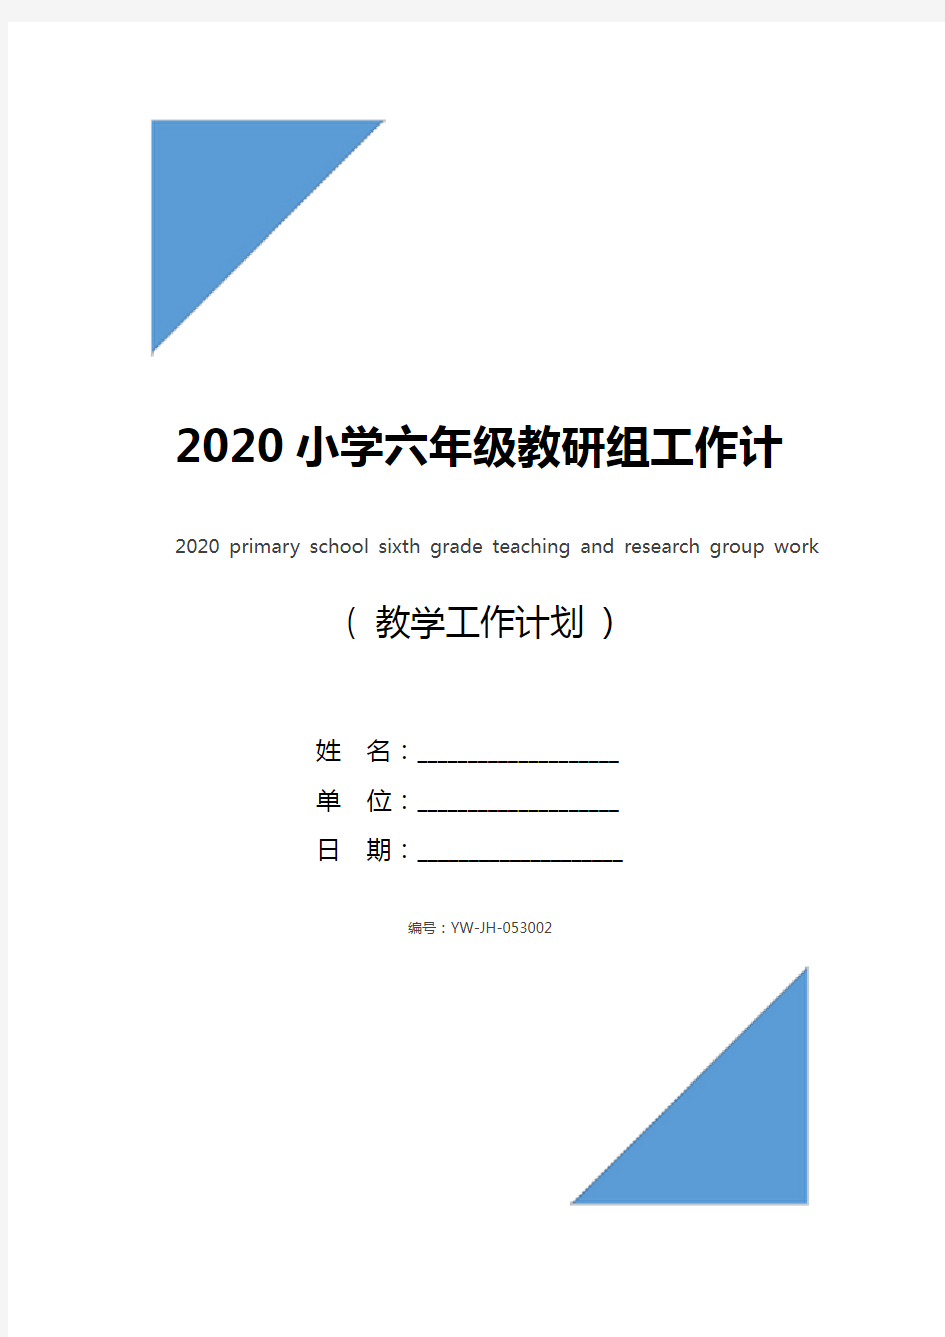 2020小学六年级教研组工作计划